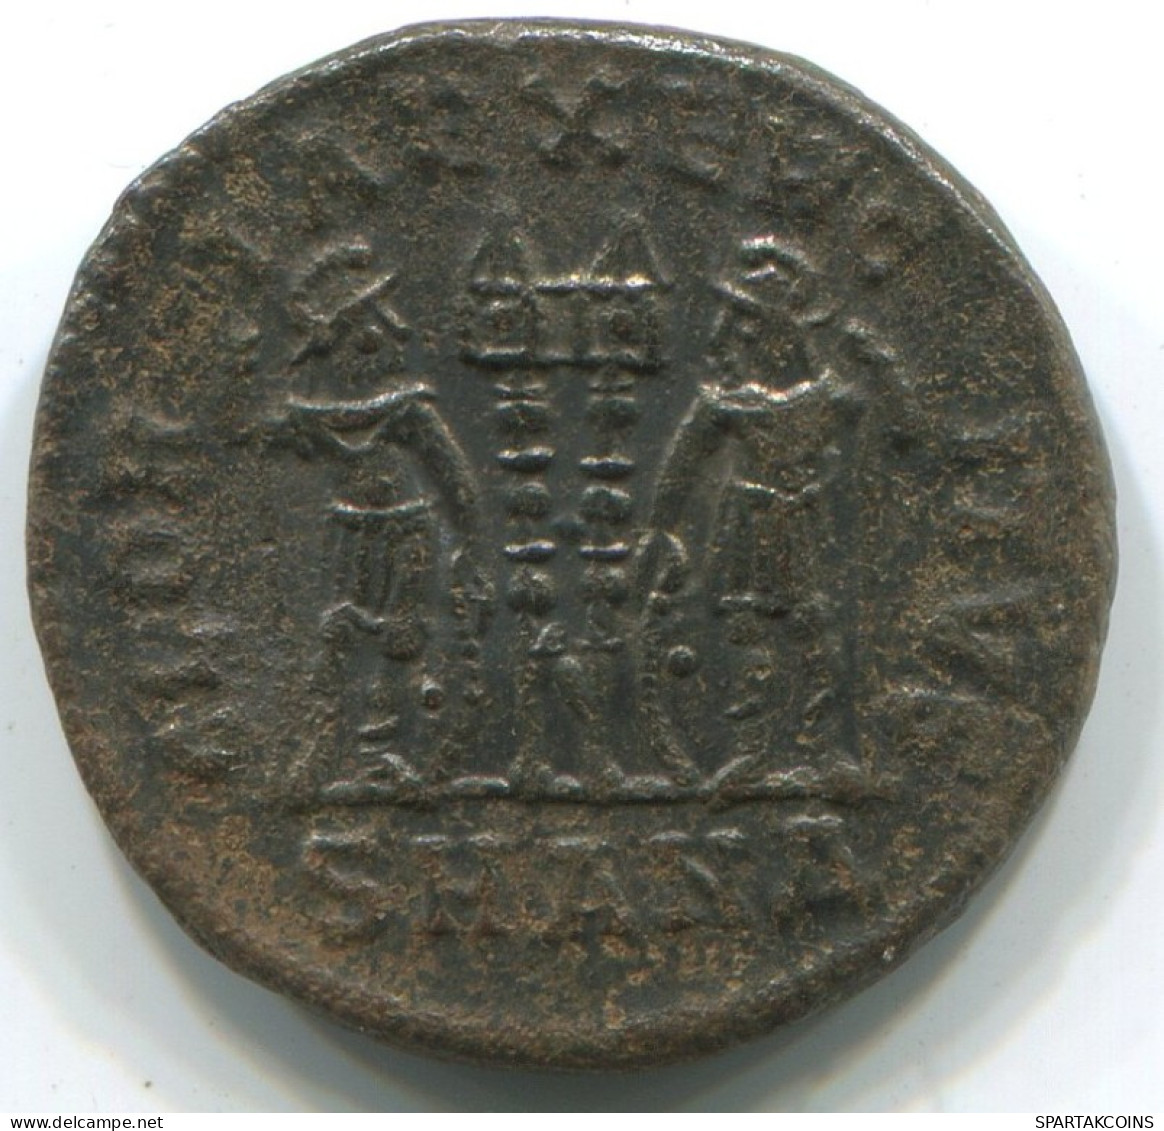 Authentische Antike Spätrömische Münze RÖMISCHE Münze 2.7g/17mm #ANT2272.14.D.A - The End Of Empire (363 AD To 476 AD)